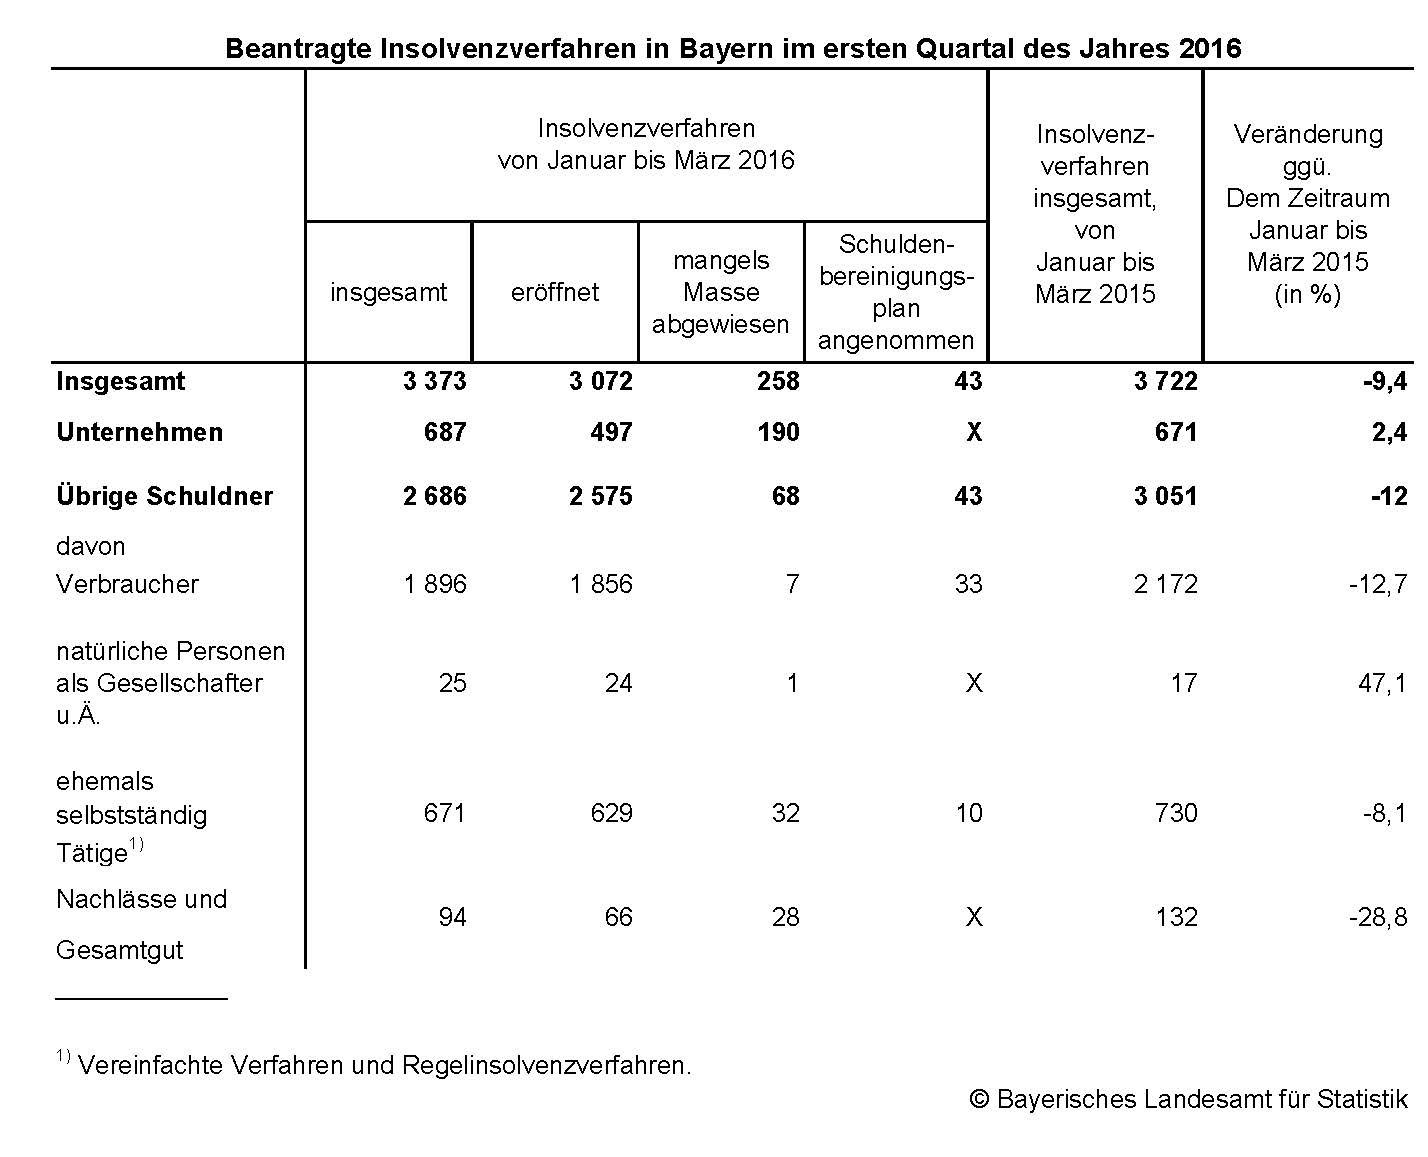 Beantragte Insolvenzverfahren in Bayern im ersten Quartal des Jahres 2016